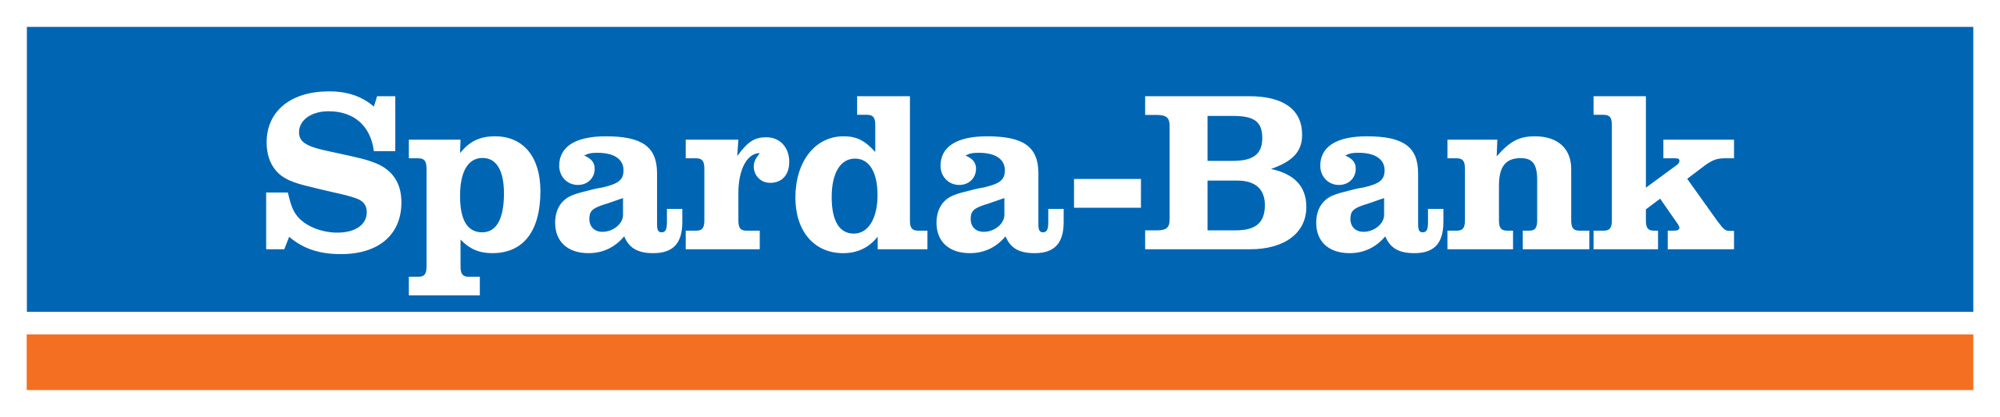 Sparda_Bank_logo